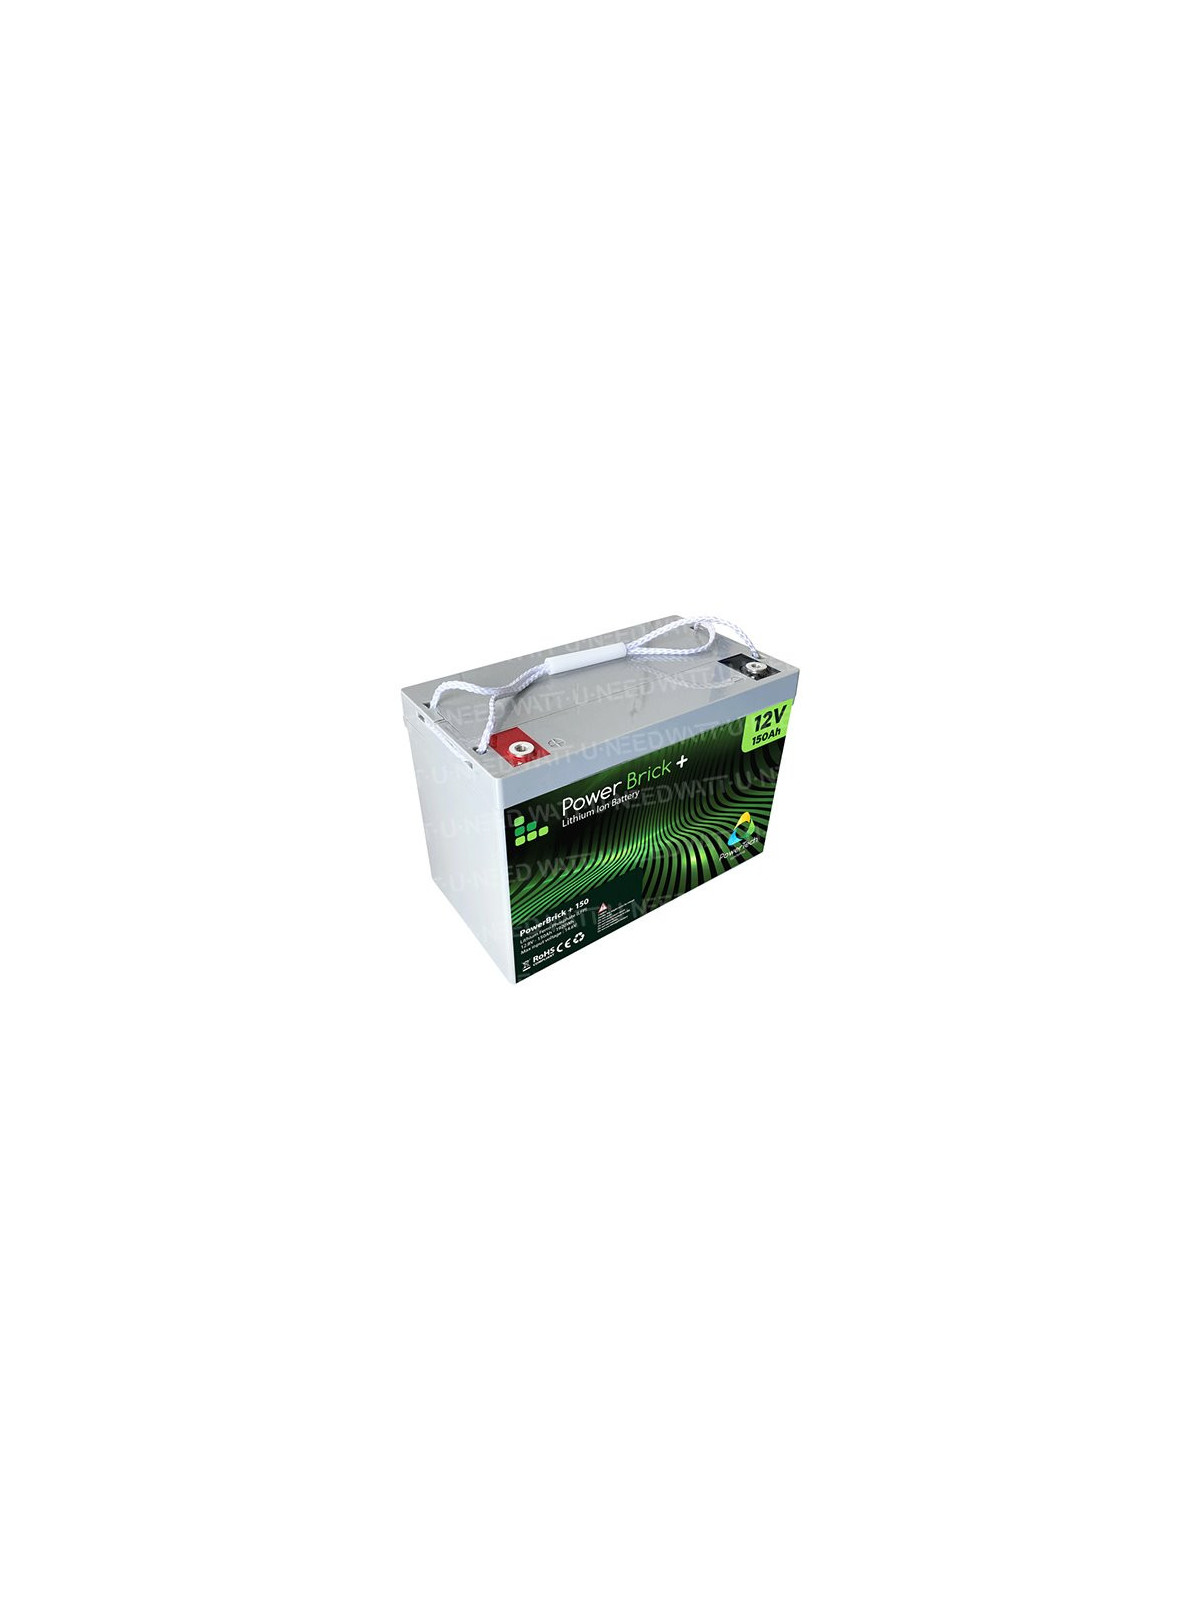 PowerBrick lithium battery + 12V 100Ah